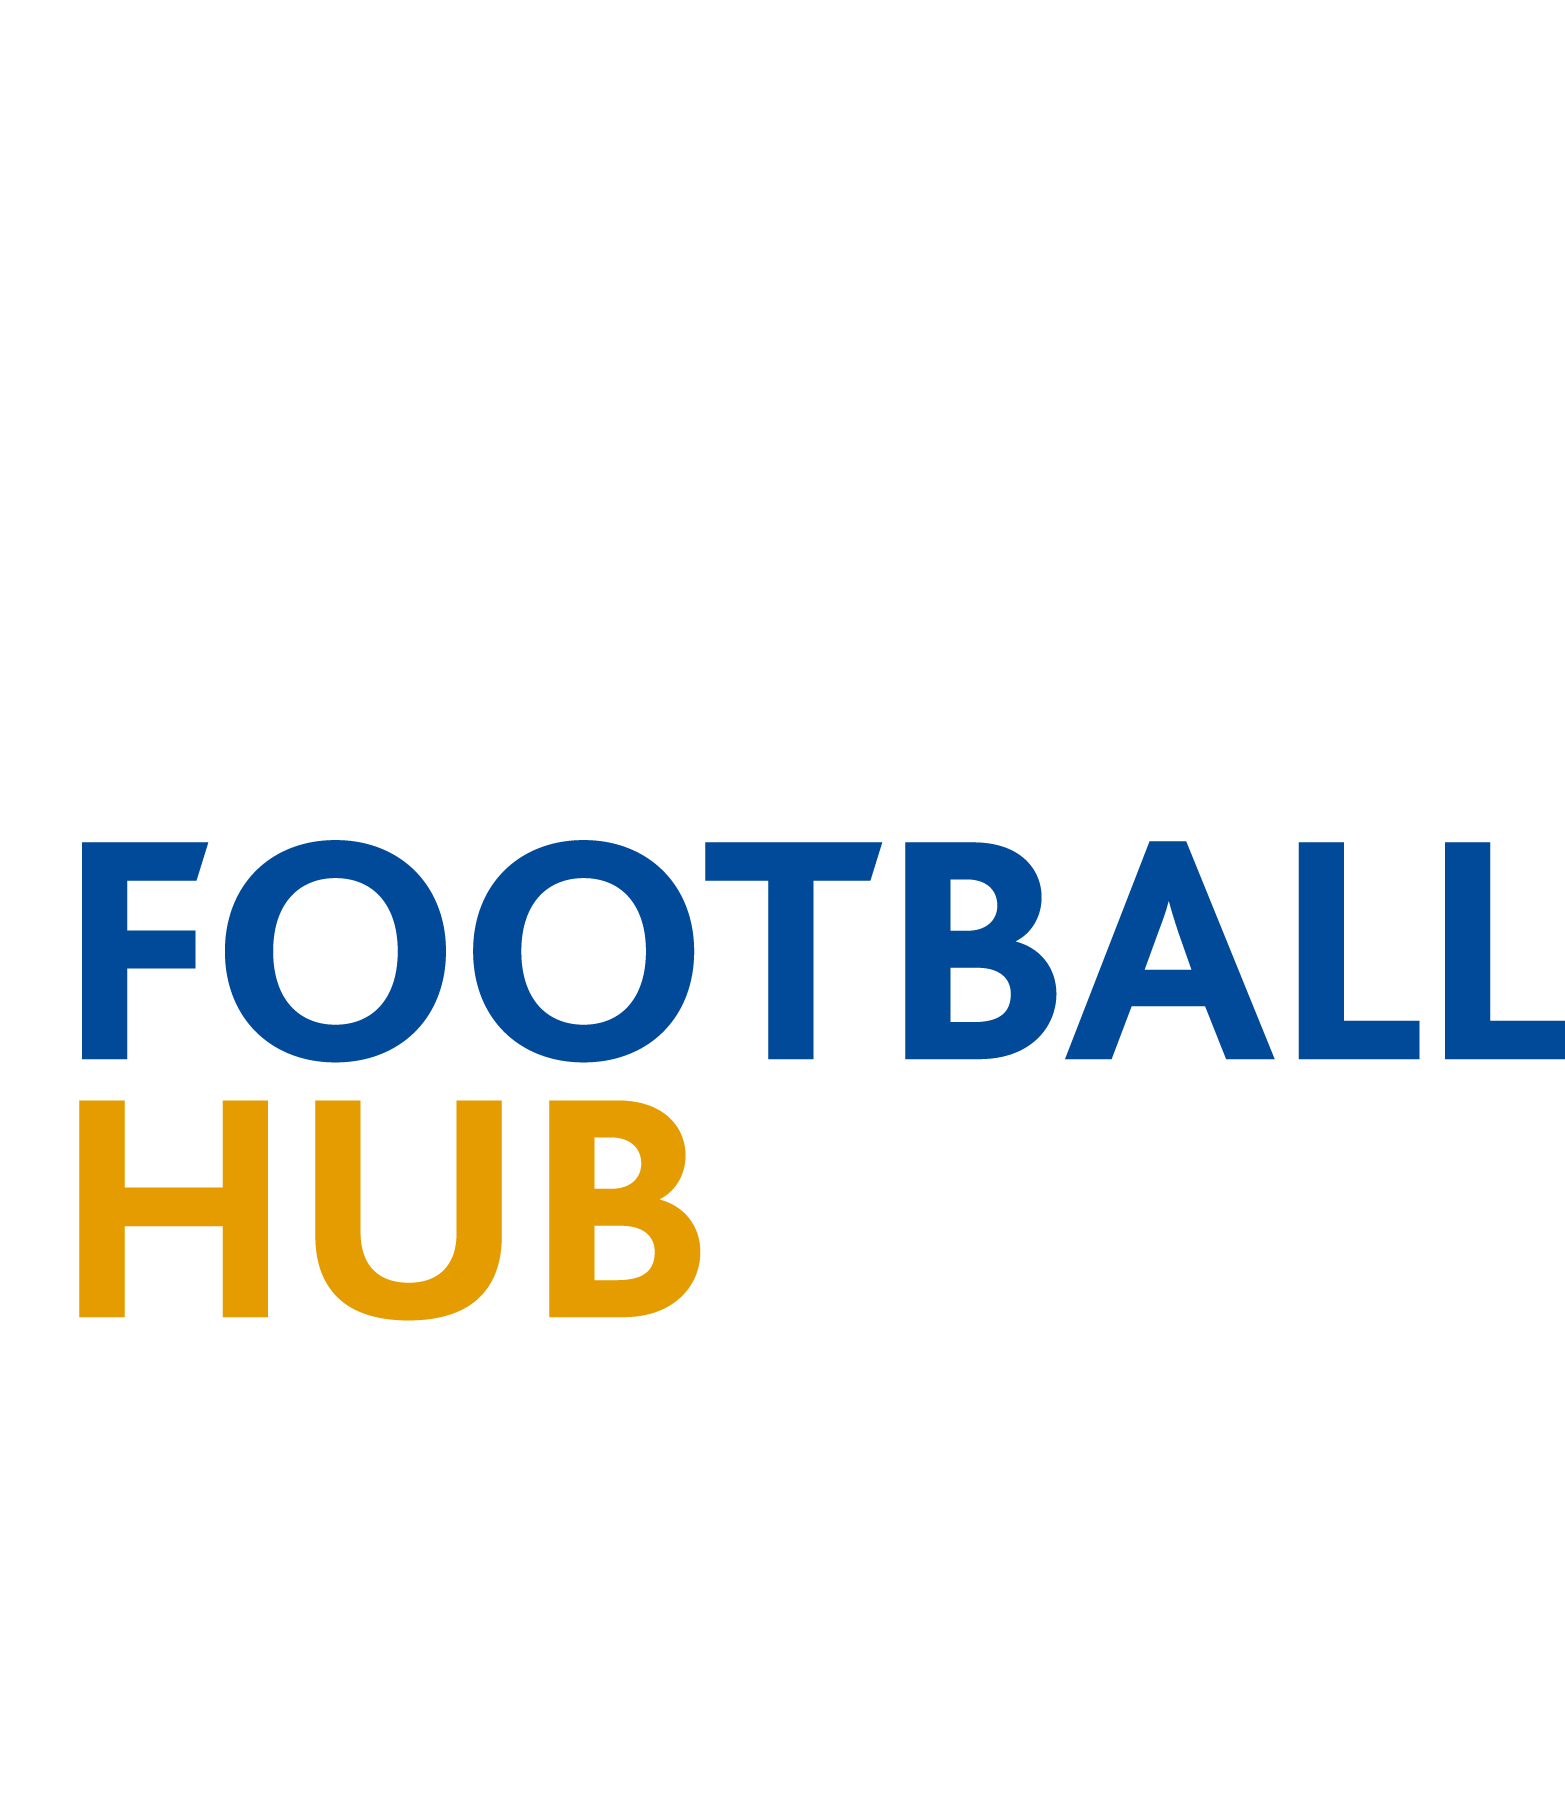 FootballHub